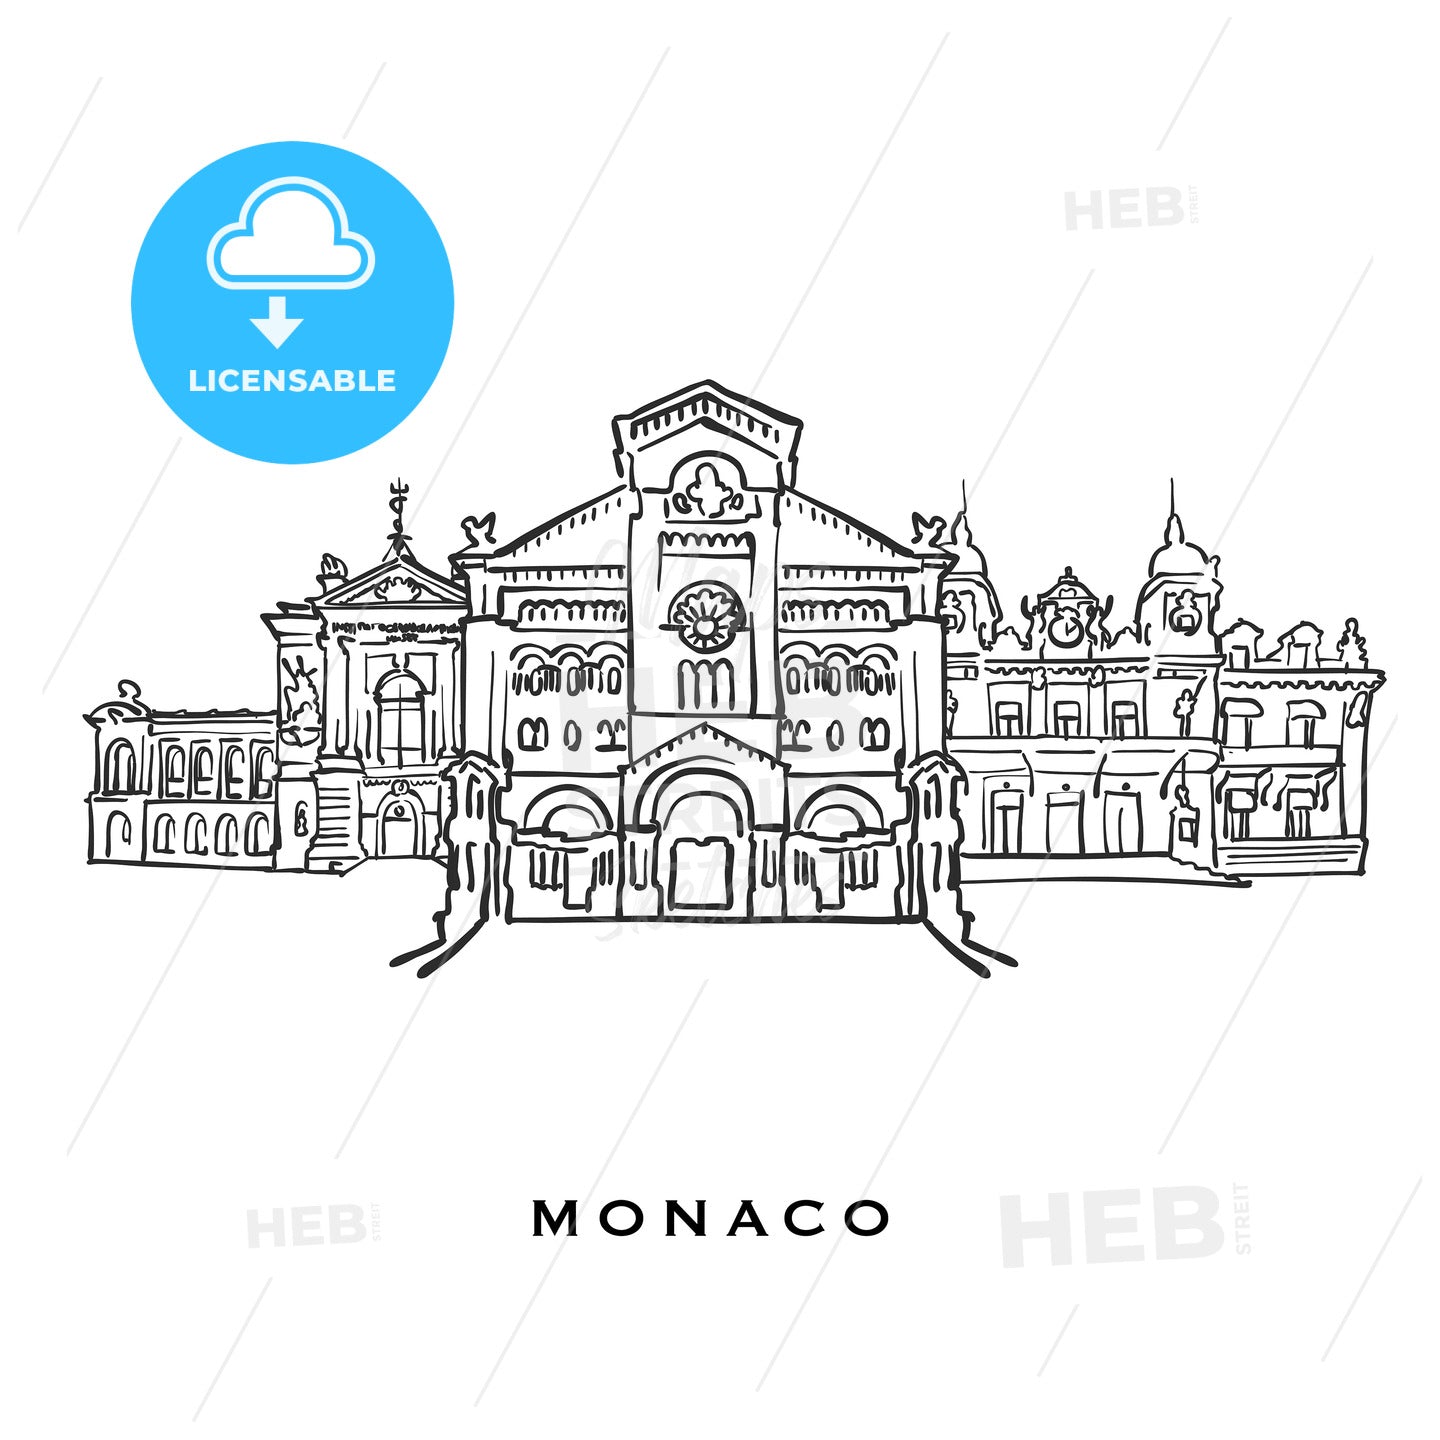 Monaco famous architecture – instant download